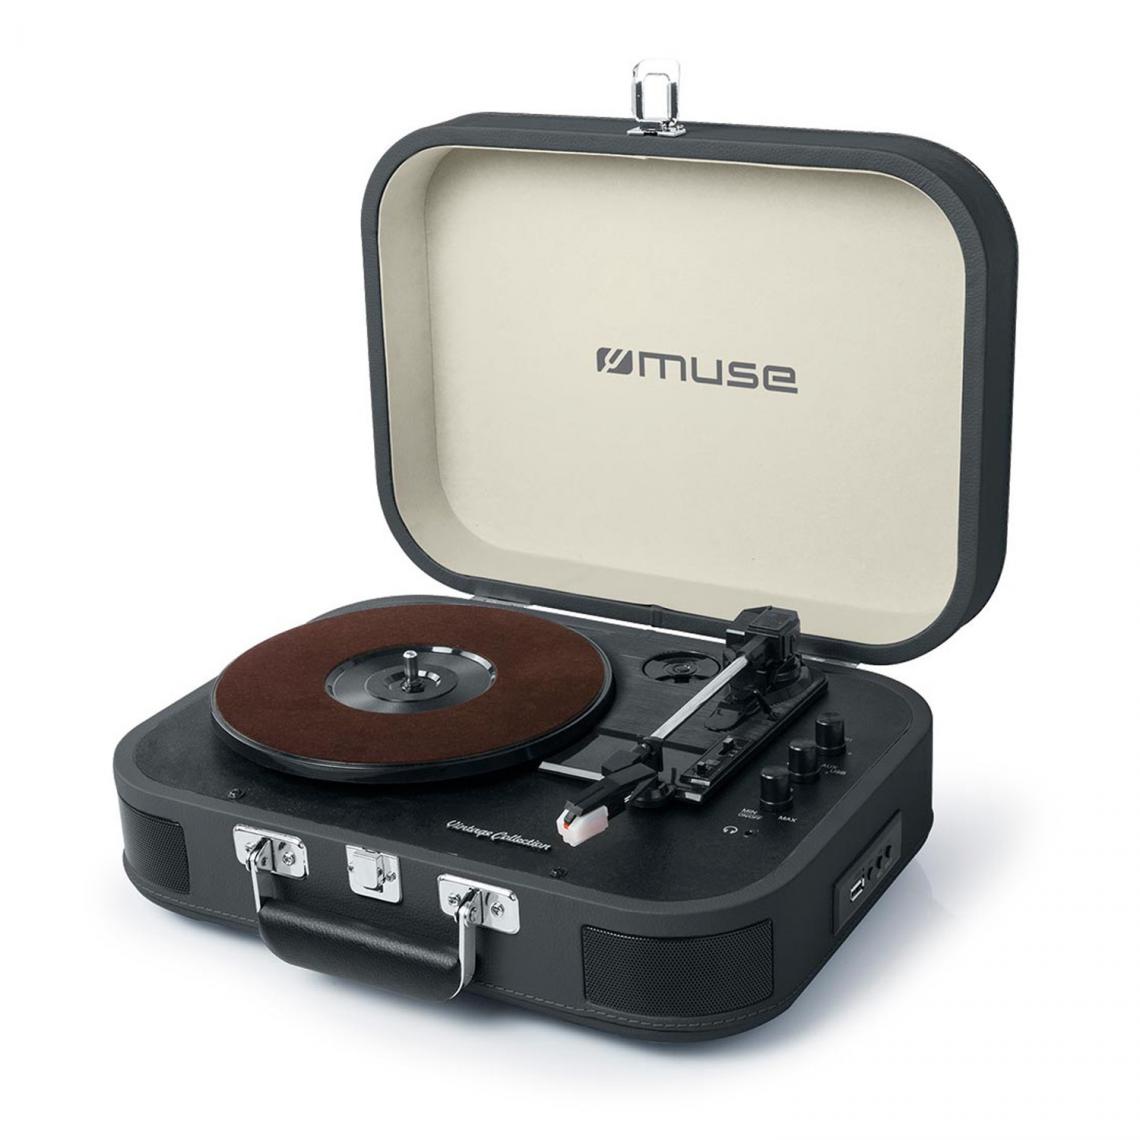 Muse - Platine vinyle stéréo Noire 33/45/78 tours avec enceintes intégrées - USB/SD/AUX - Prise casque - Platine